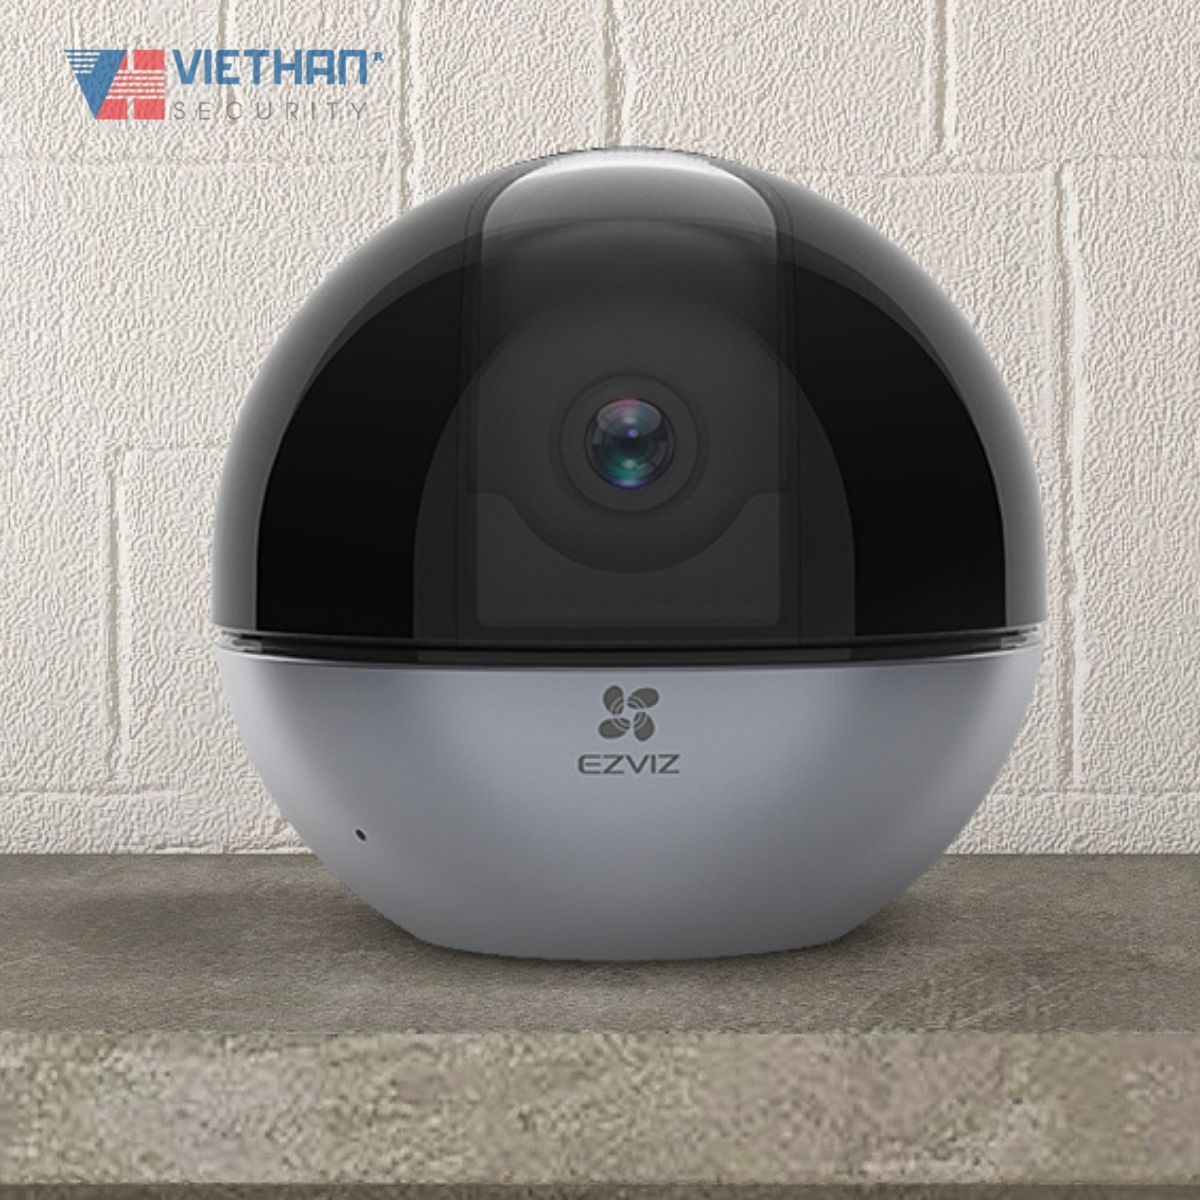 Camera Wifi EZVIZ C6W 4MP quay quét 360 độ (Chuẩn nén H.265, nhận diện người, đàm thoại 2 chiều, hồng ngoại 10m)